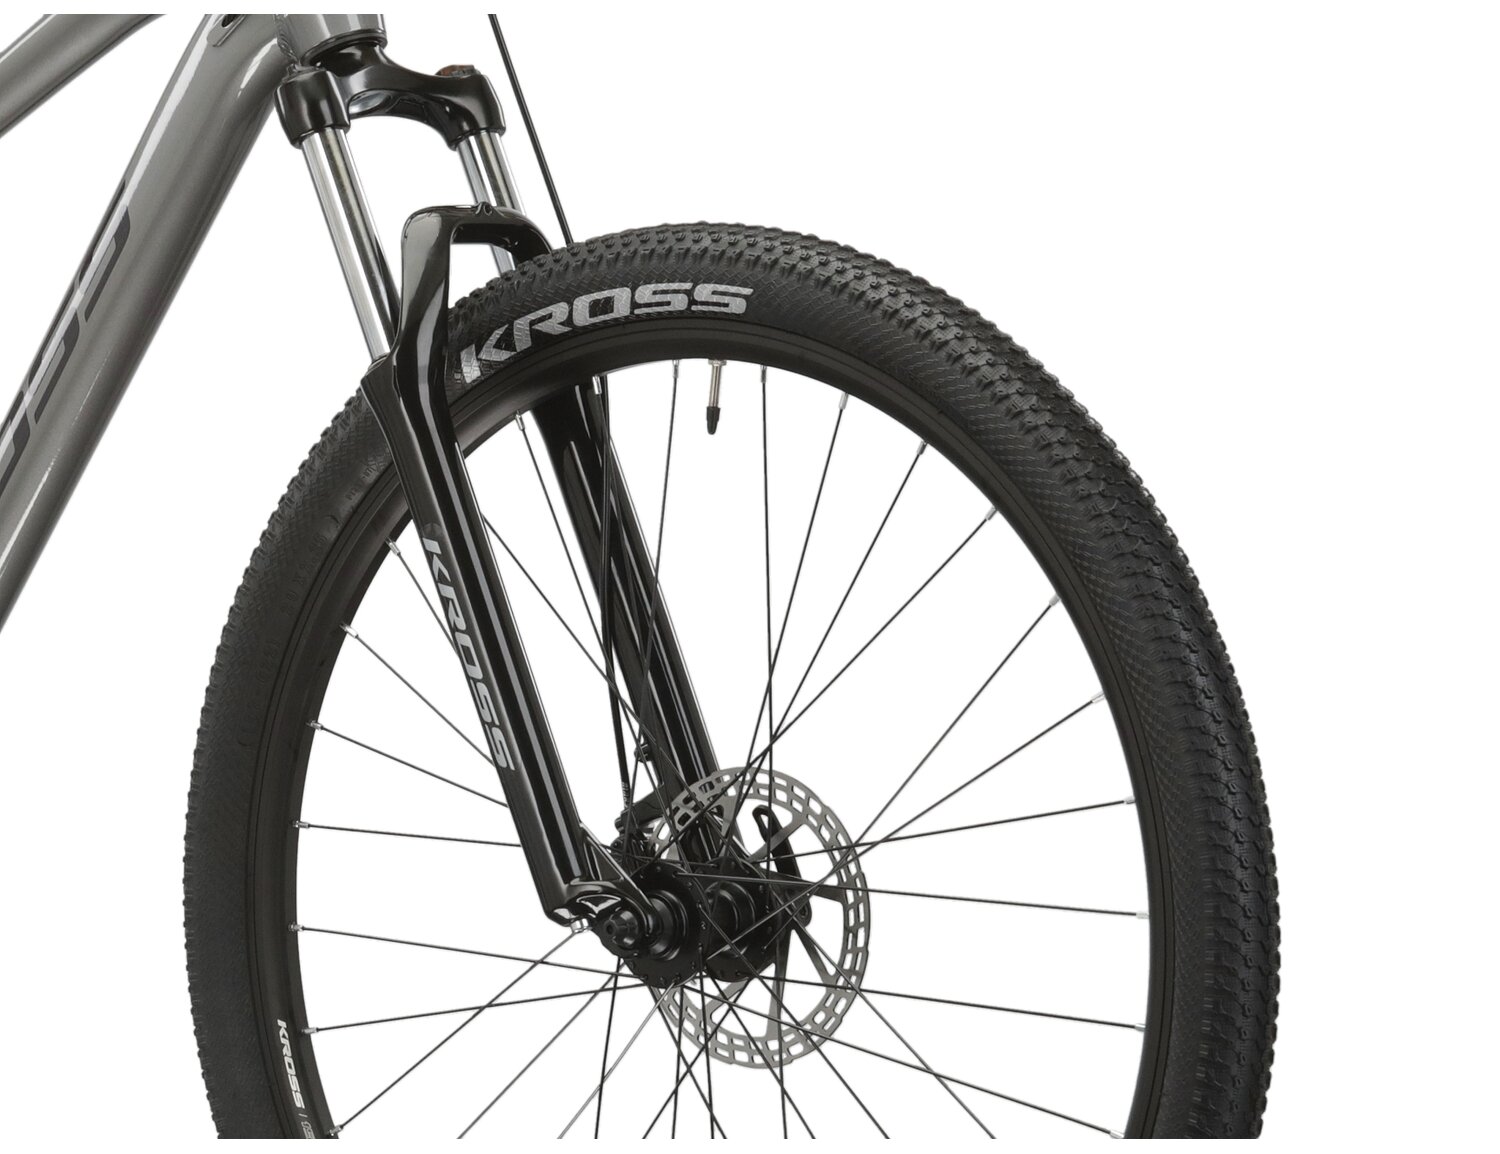  Aluminowa rama, amortyzowany widelec o skoku 100mm oraz opony o szerokości 2,25 cala w rowerze górskim MTB KROSS Hexagon 3.0 